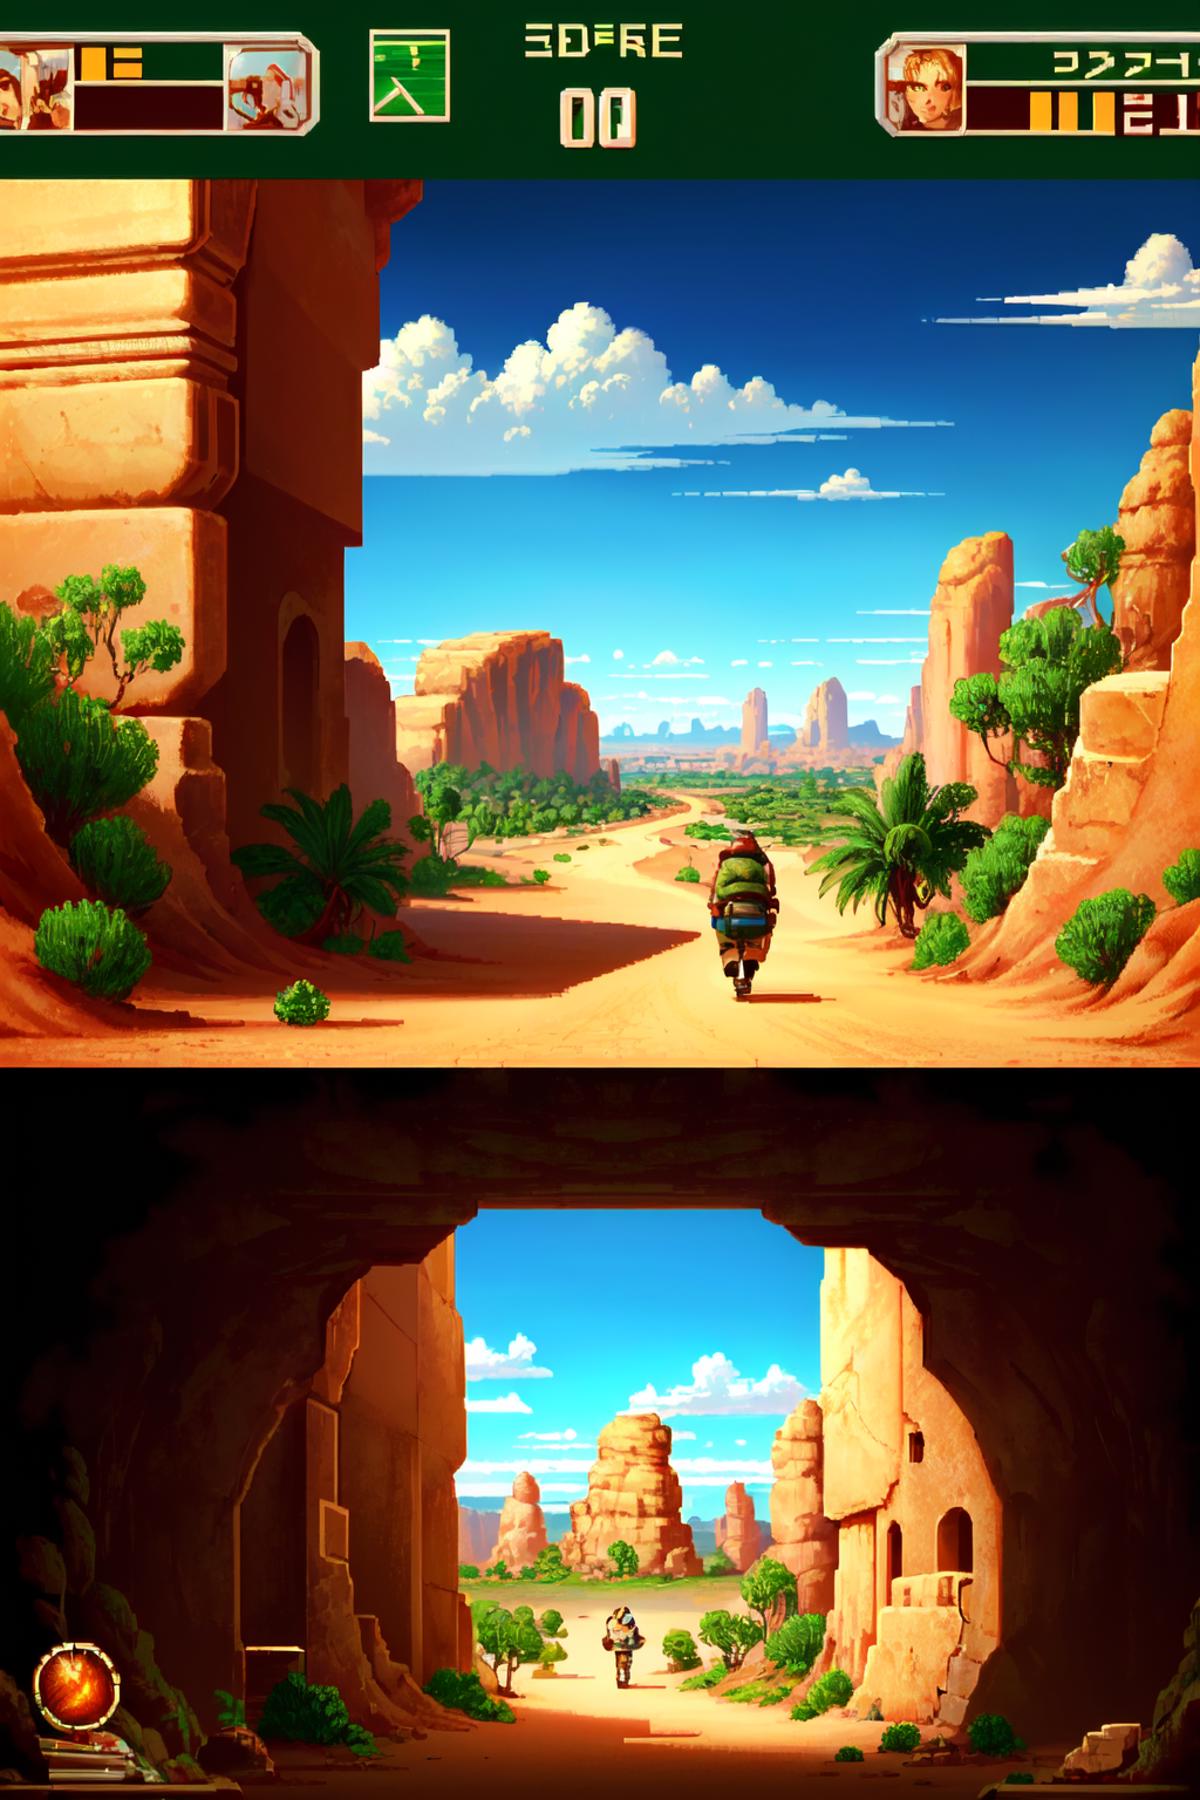 Genesis / Megadrive Gameplay screenshot image by NostalgiaForever